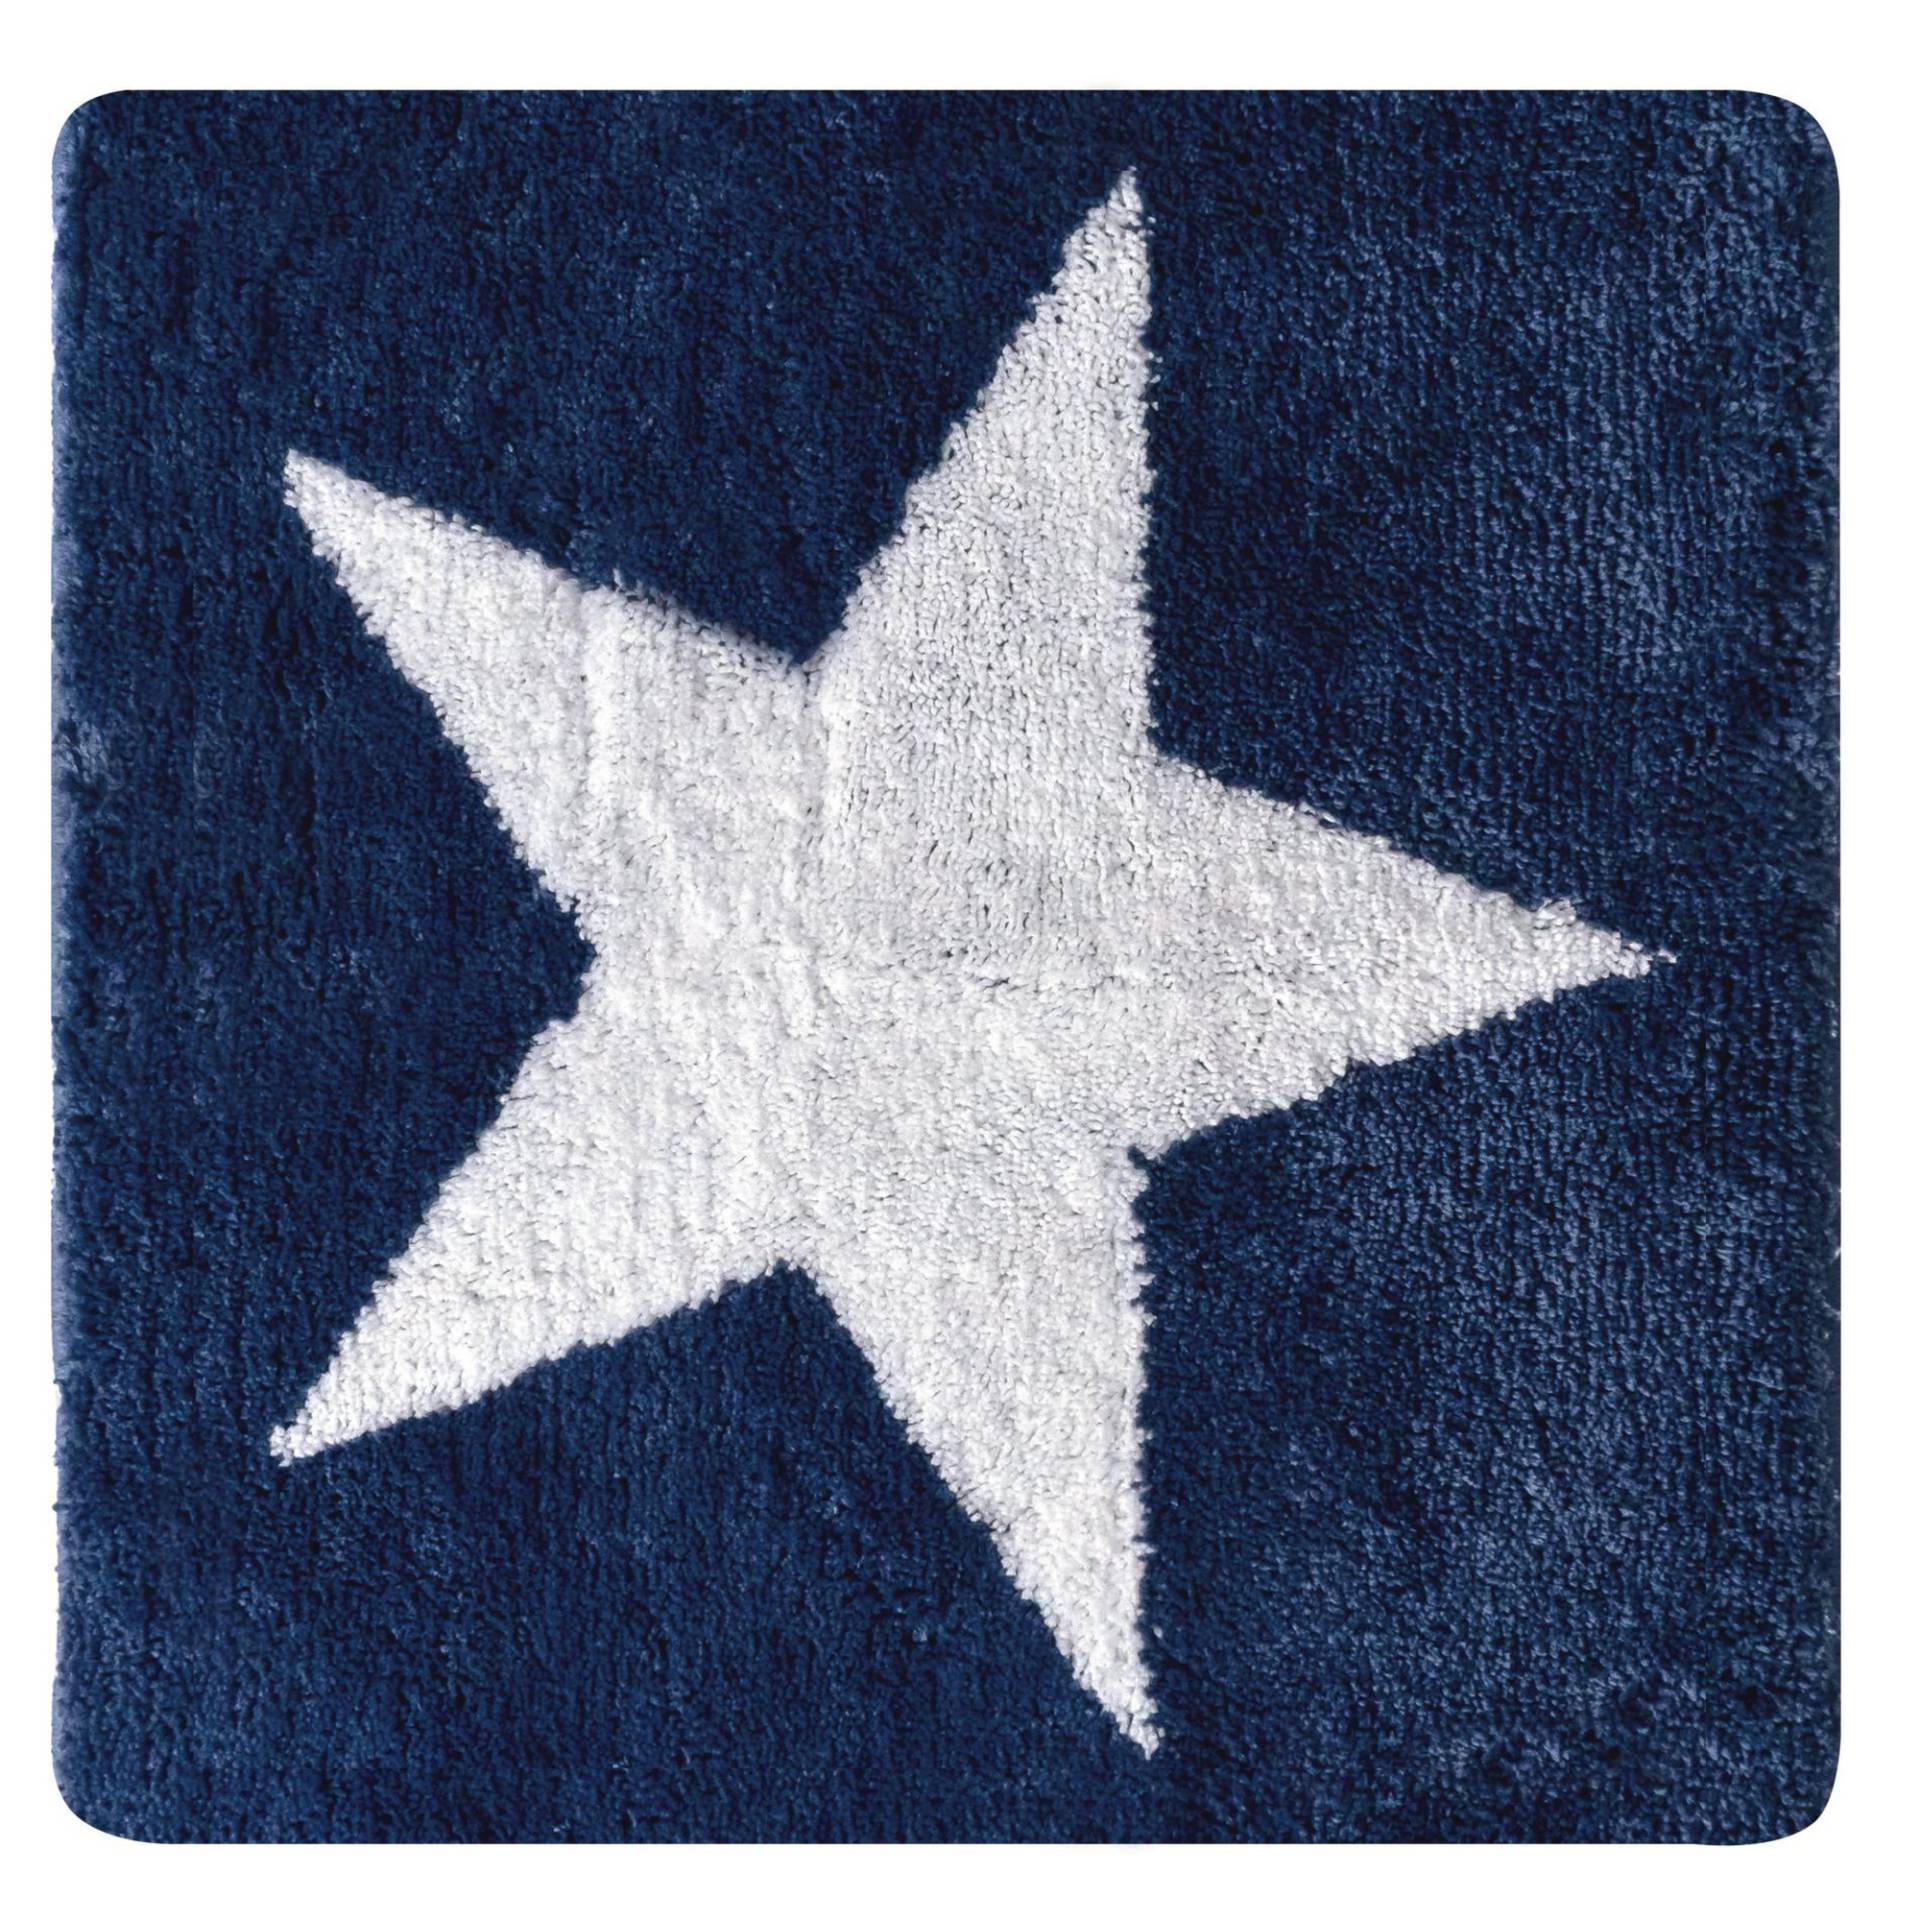 Ridder Badteppich 'Star' blau/weiß 55 x 50 cm von Ridder